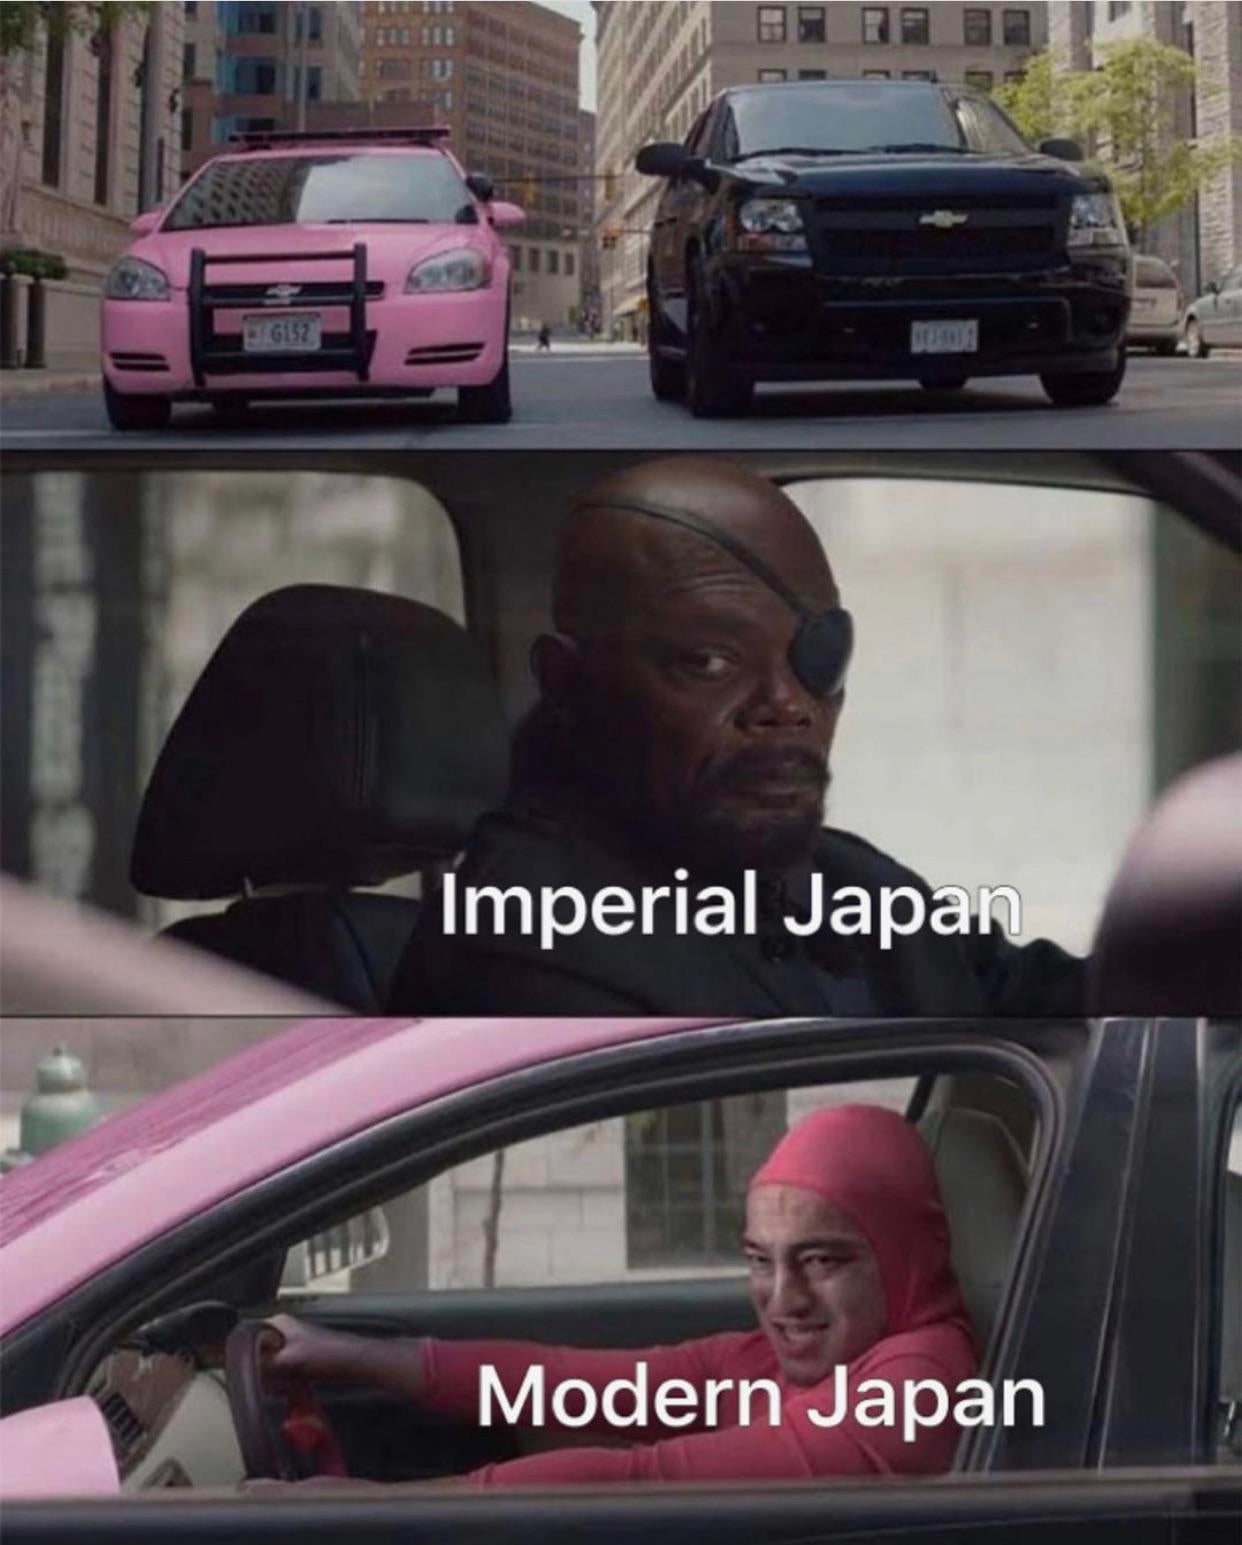 funny endgame spoiler memes - G52 Imperial Japan Modern Japan